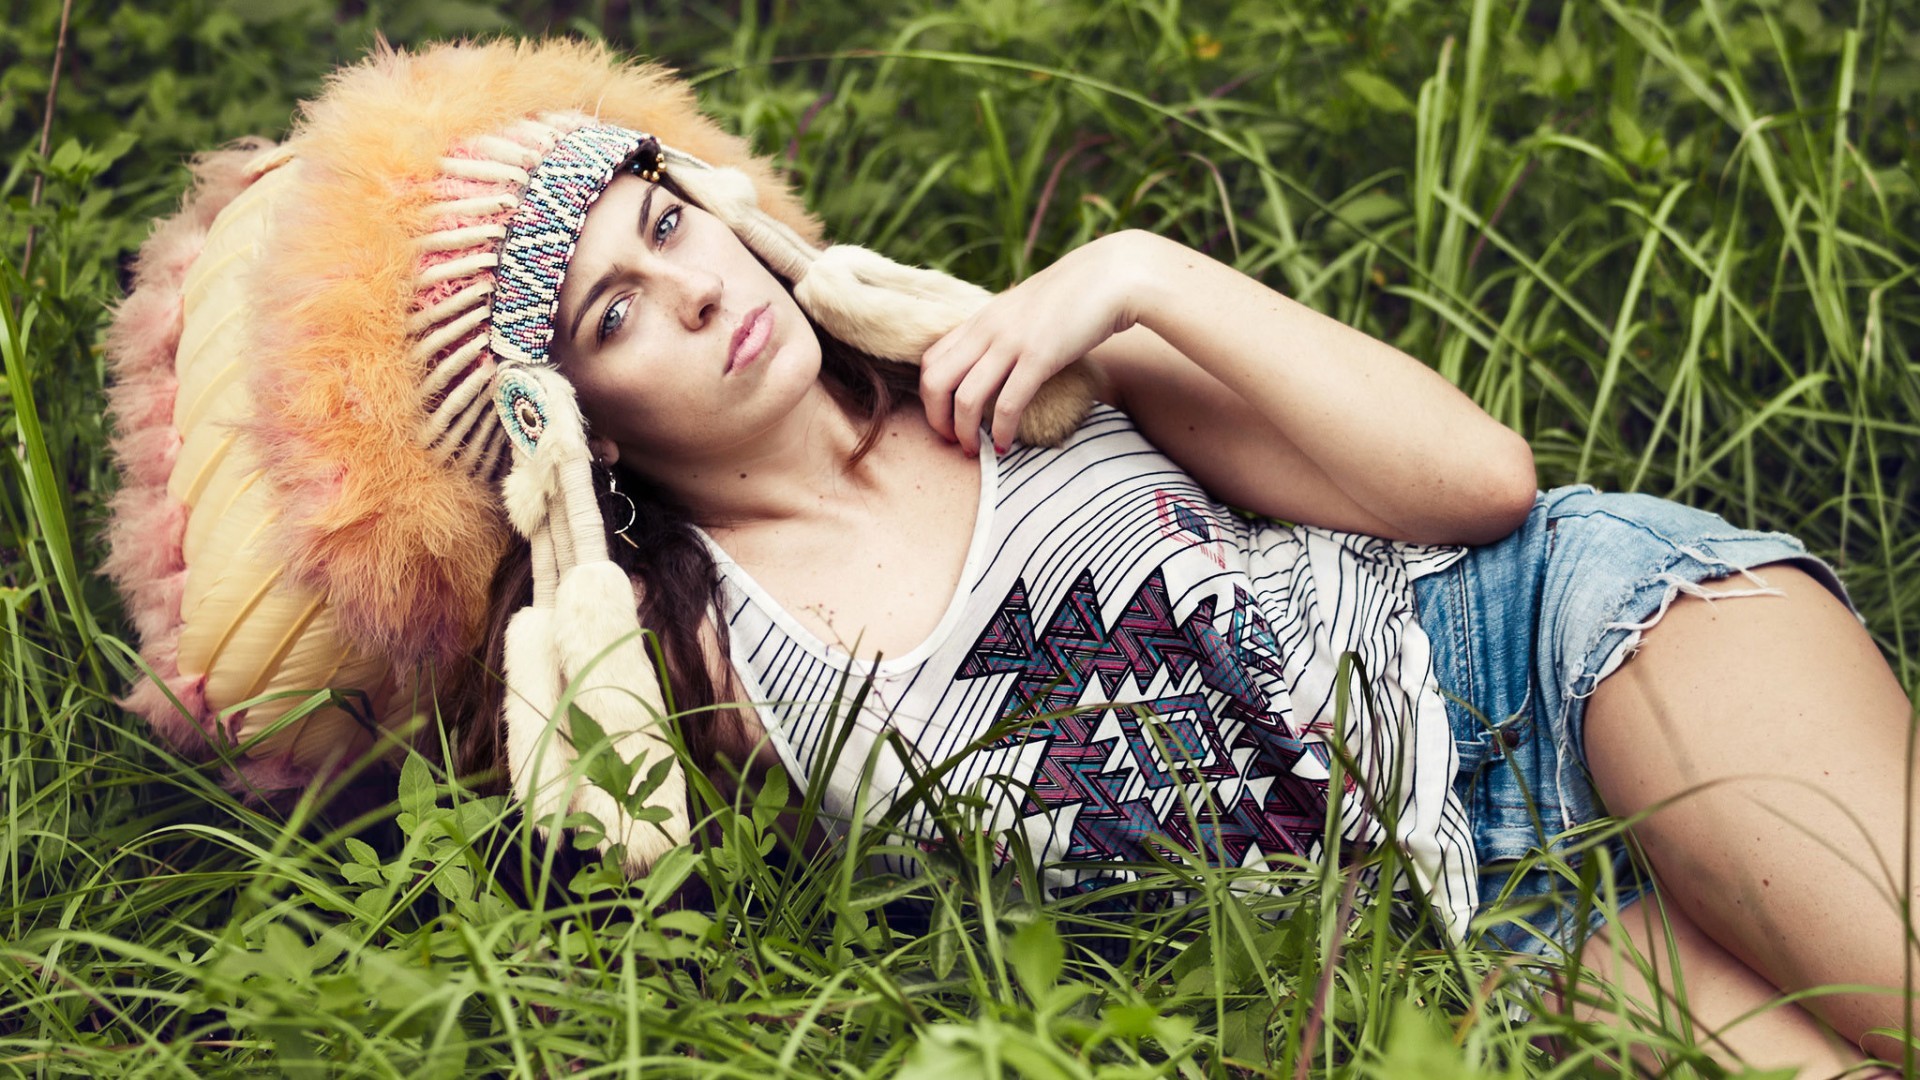 model, Headdress, Women outdoors, Grass, Brunette Wallpaper